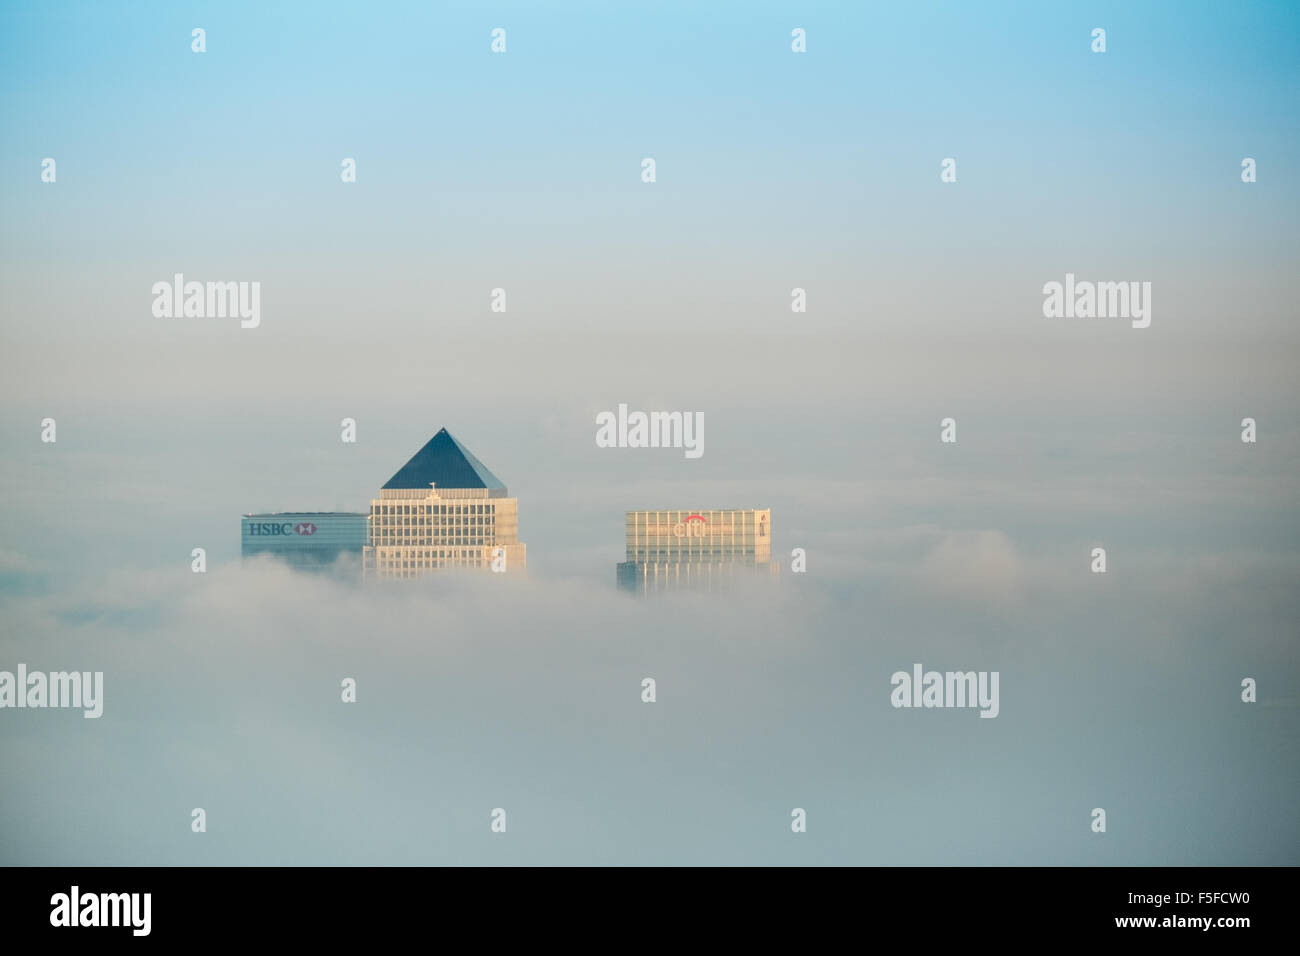 Die Dächer von Hochhäusern der Docklands vor Sonnenuntergang durch die steigenden Nebel und Wolken vor blauem Himmel ragt. Stockfoto